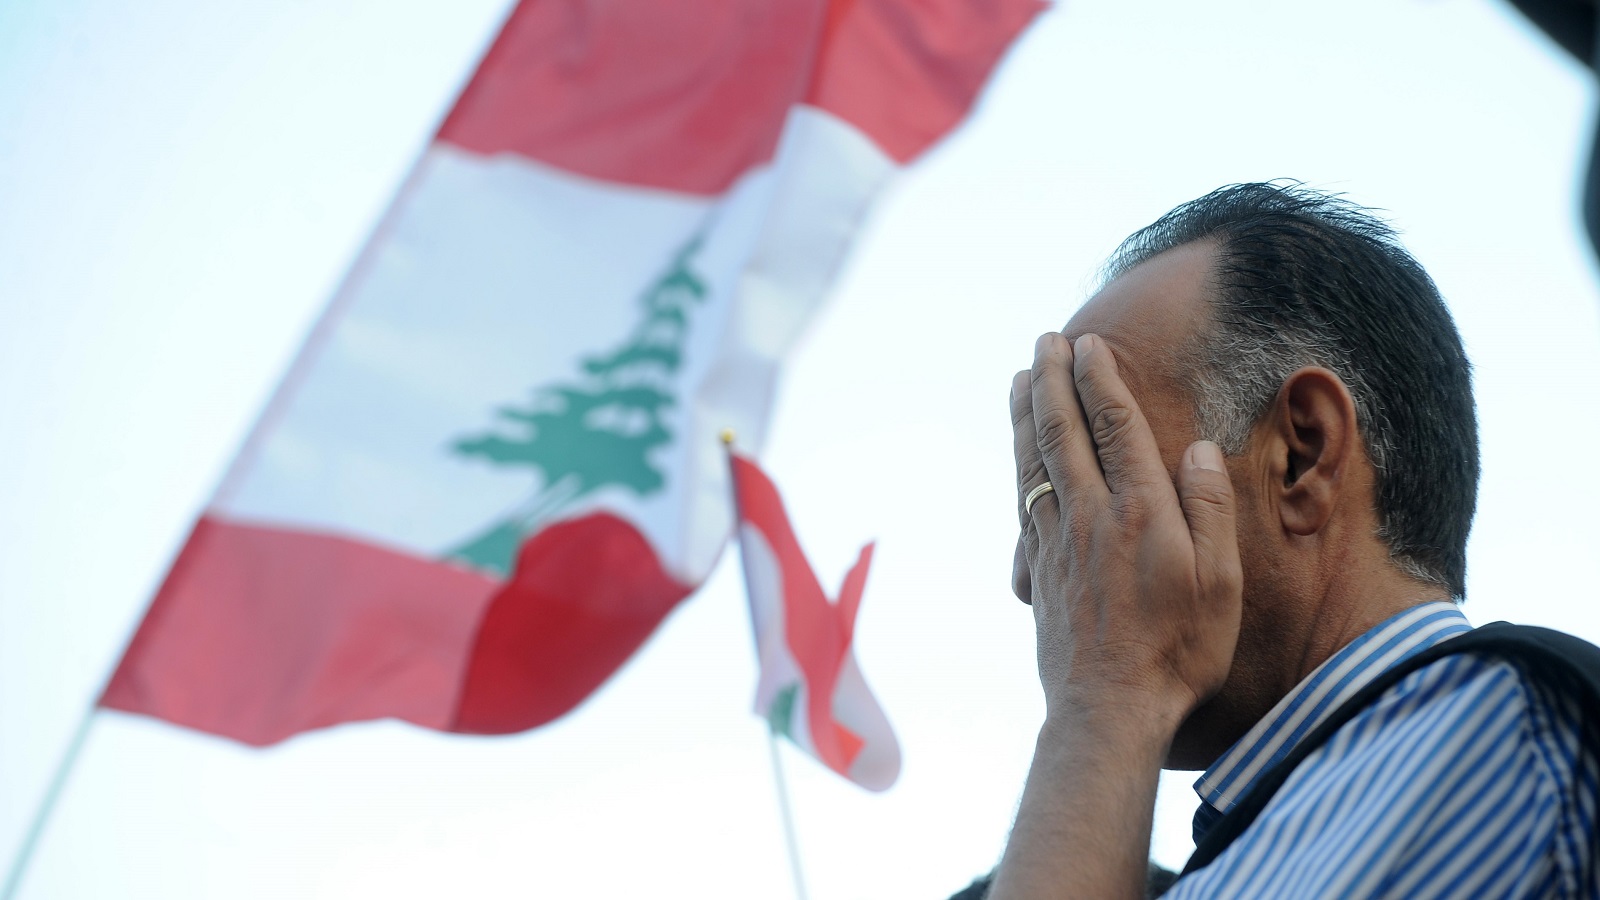 الأزمة اللبنانية تدخل حقبة "التدويل": الانتفاضة بخطر